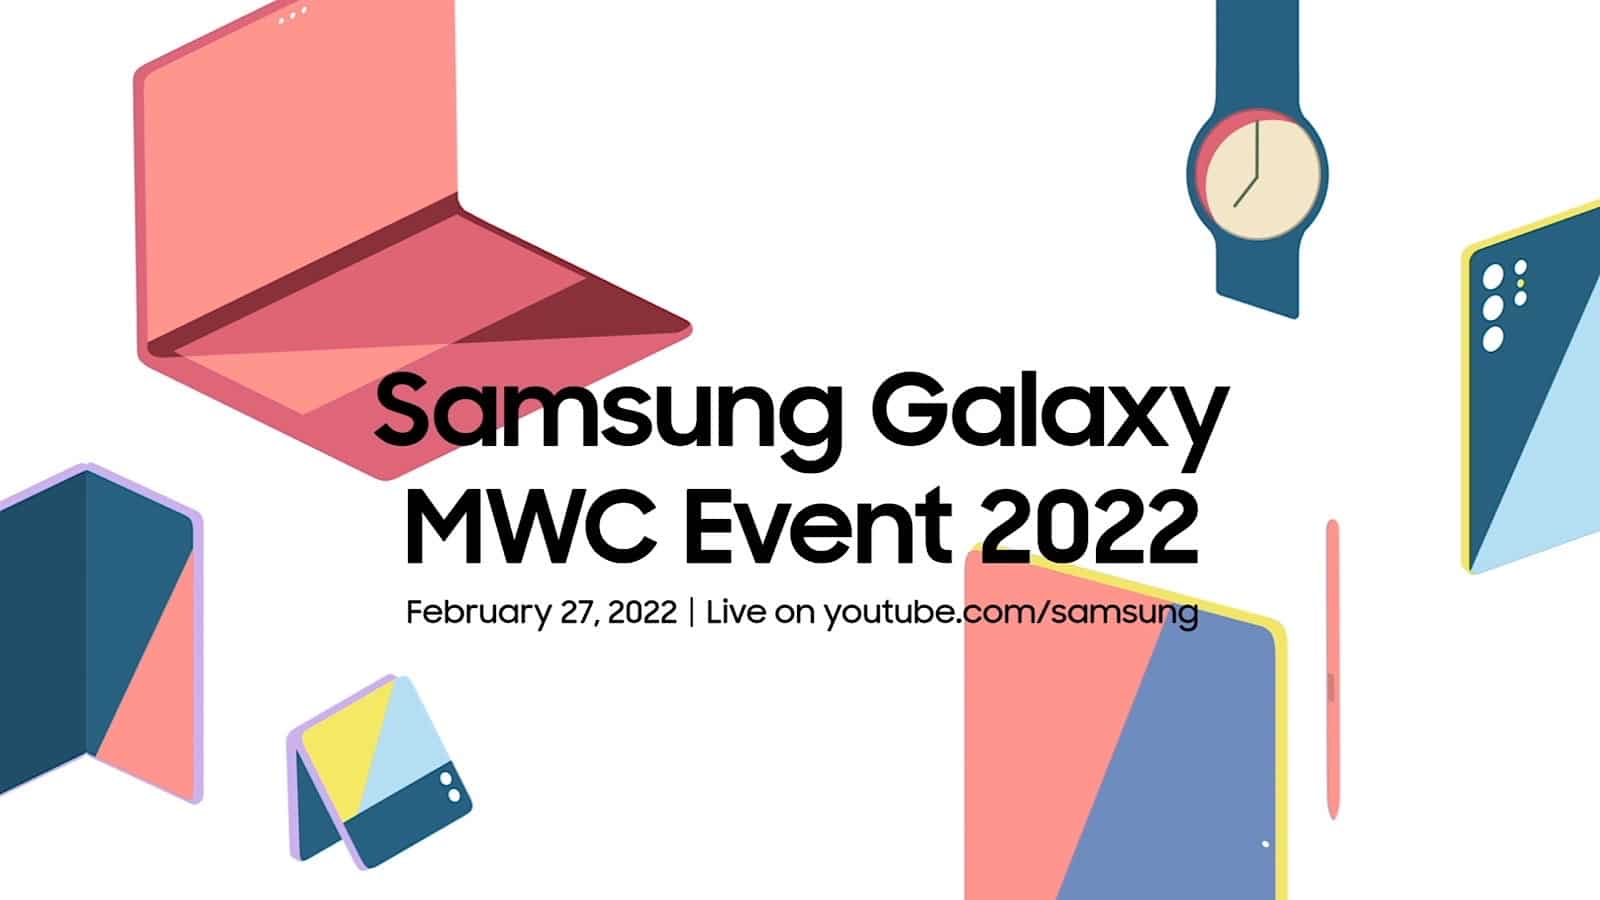 Samsung's MWC 2022 teaser